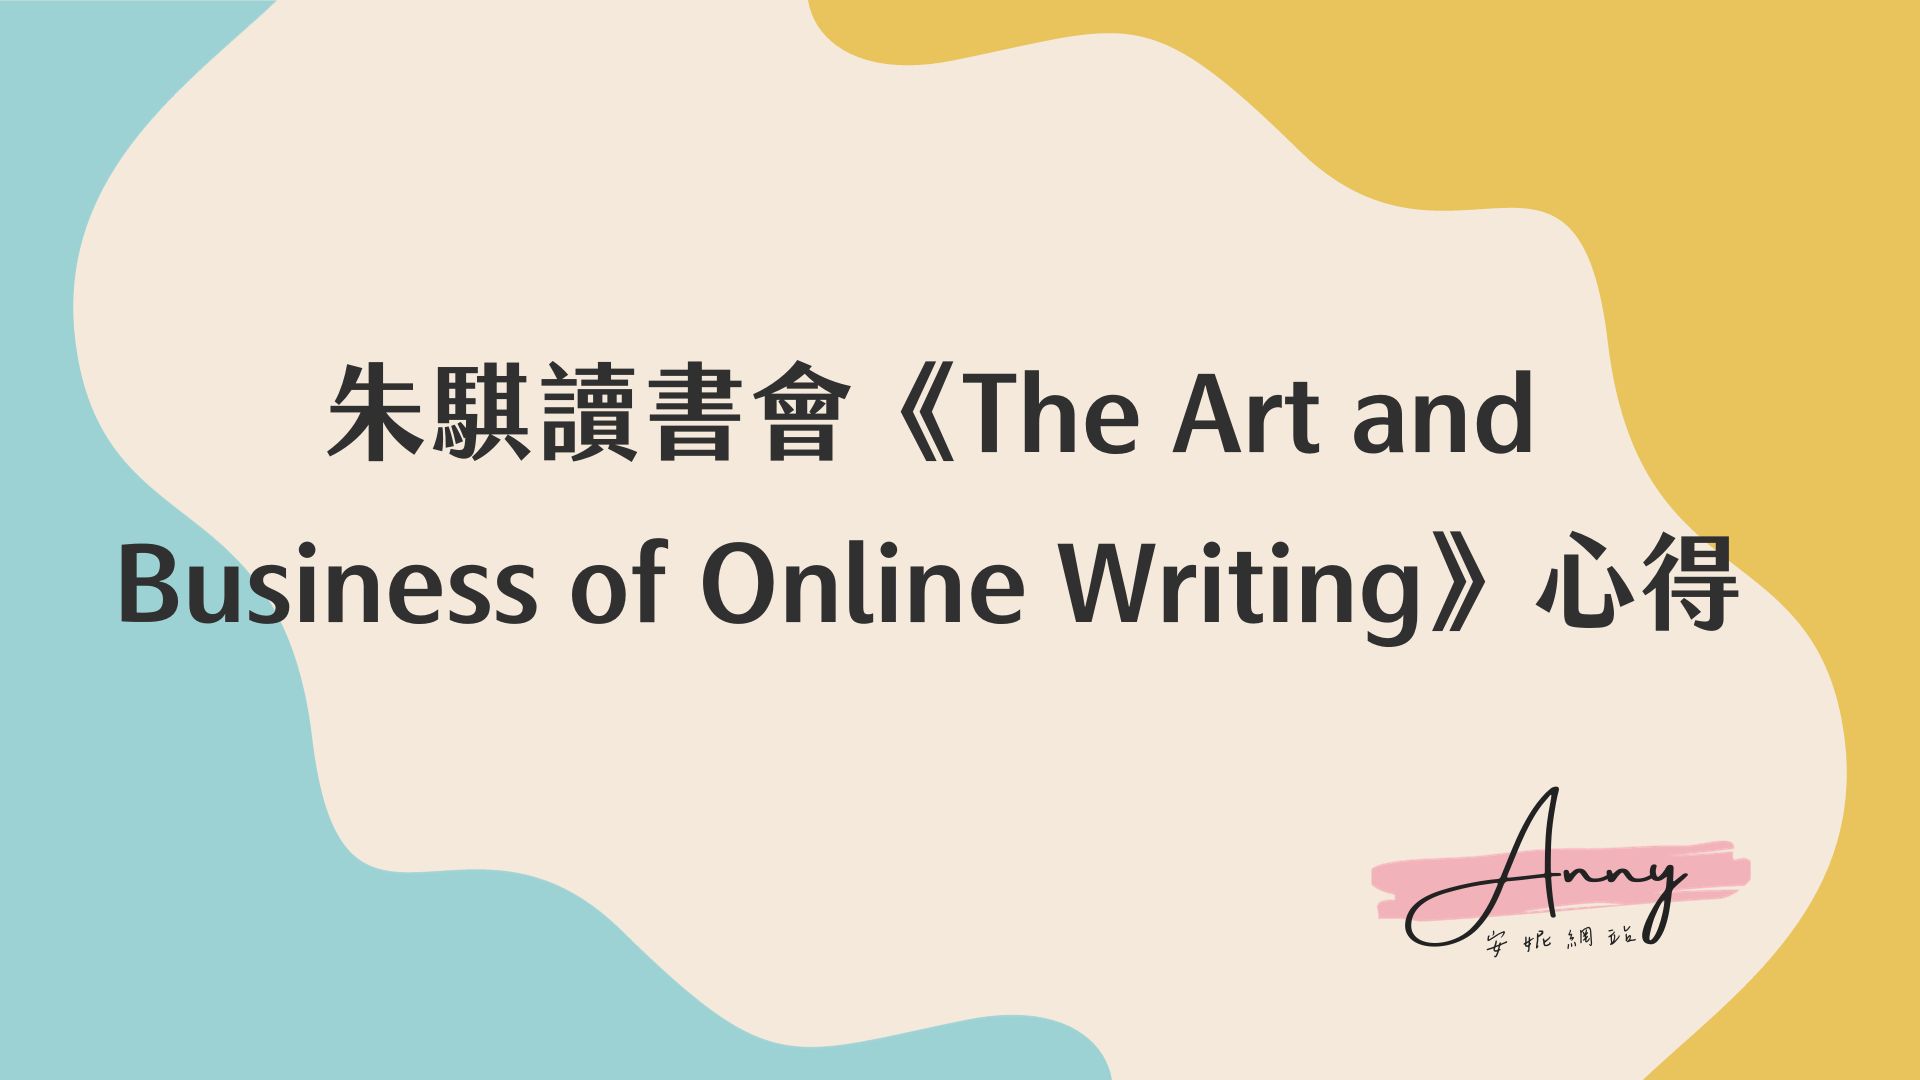 朱騏讀書會《The Art and Business of Online Writing》心得